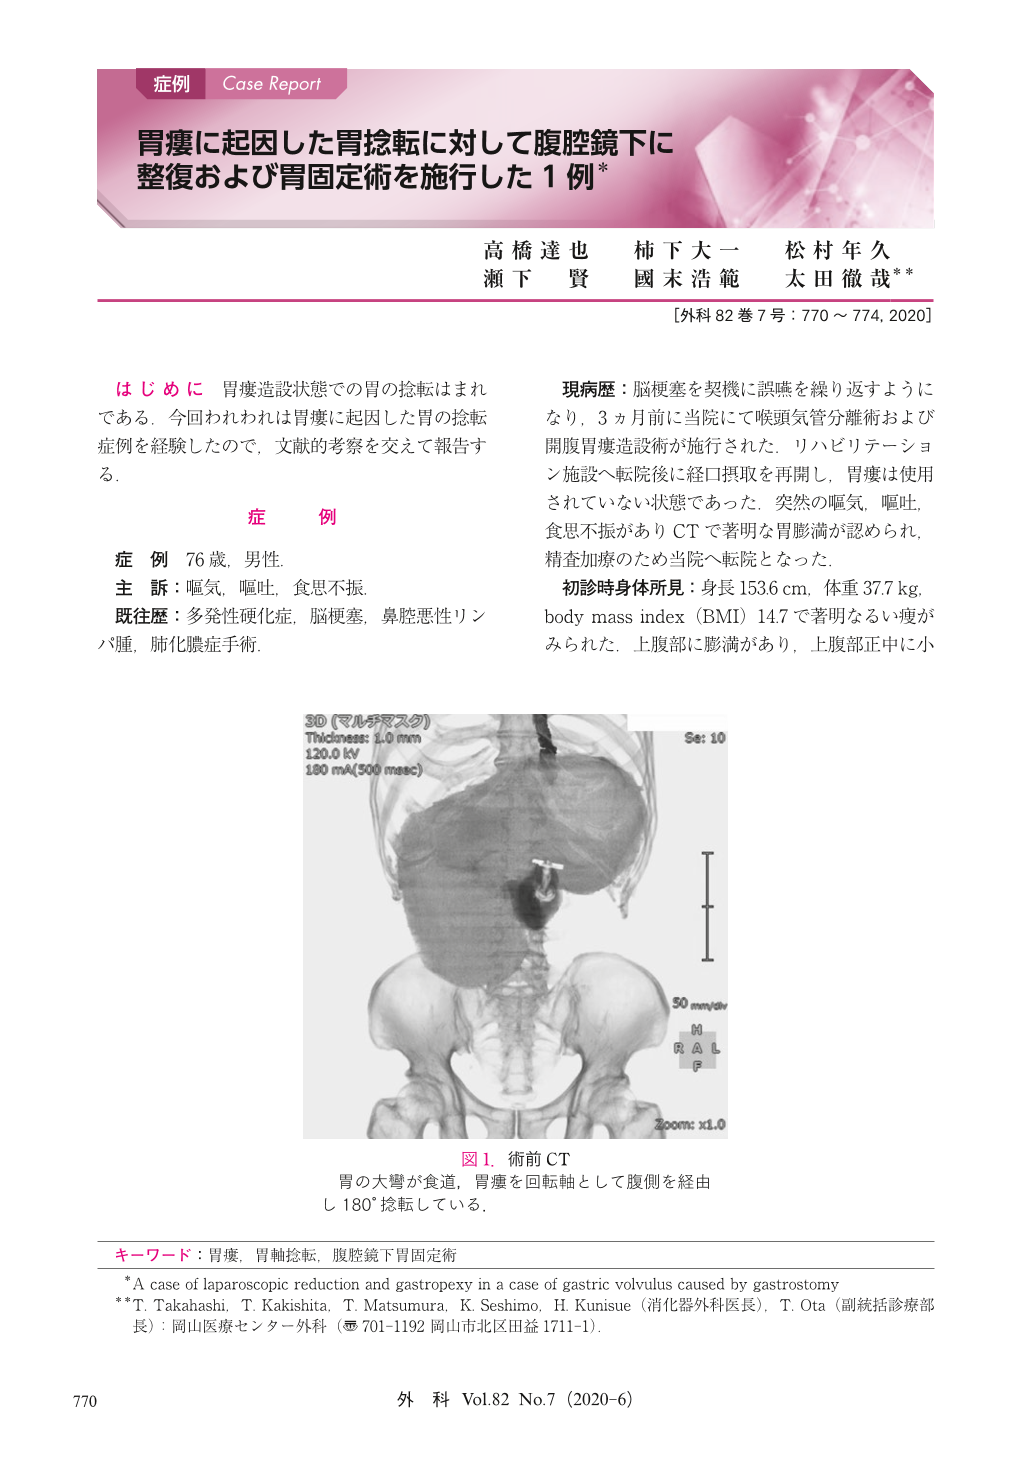 胃瘻に起因した胃捻転に対して腹腔鏡下に整復および胃固定術を施行した1例 臨床雑誌外科 巻7号 医書 Jp